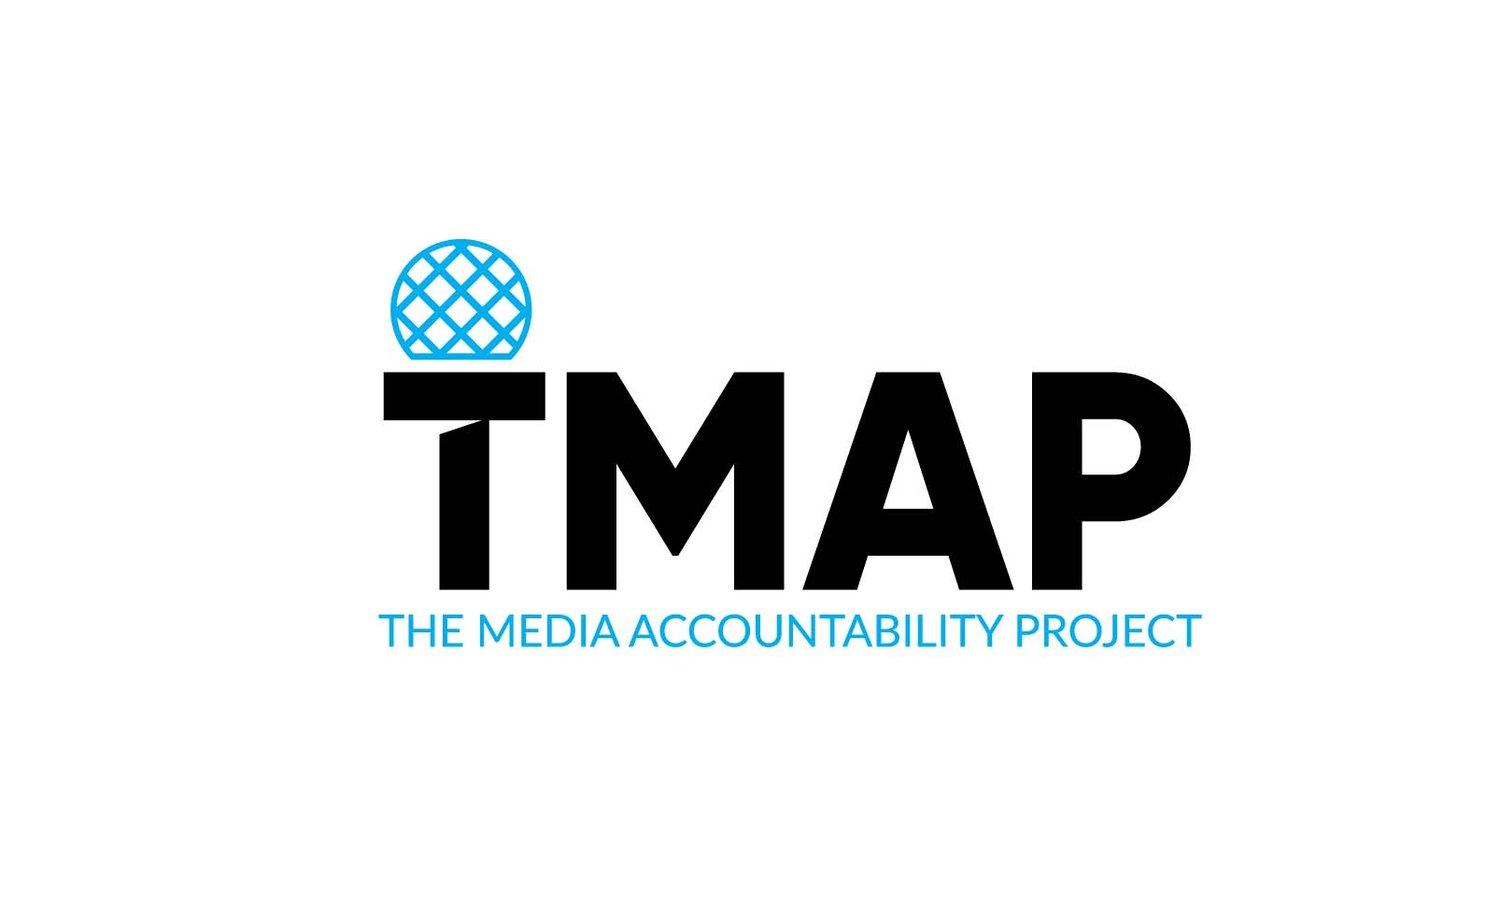 www.tmap.org